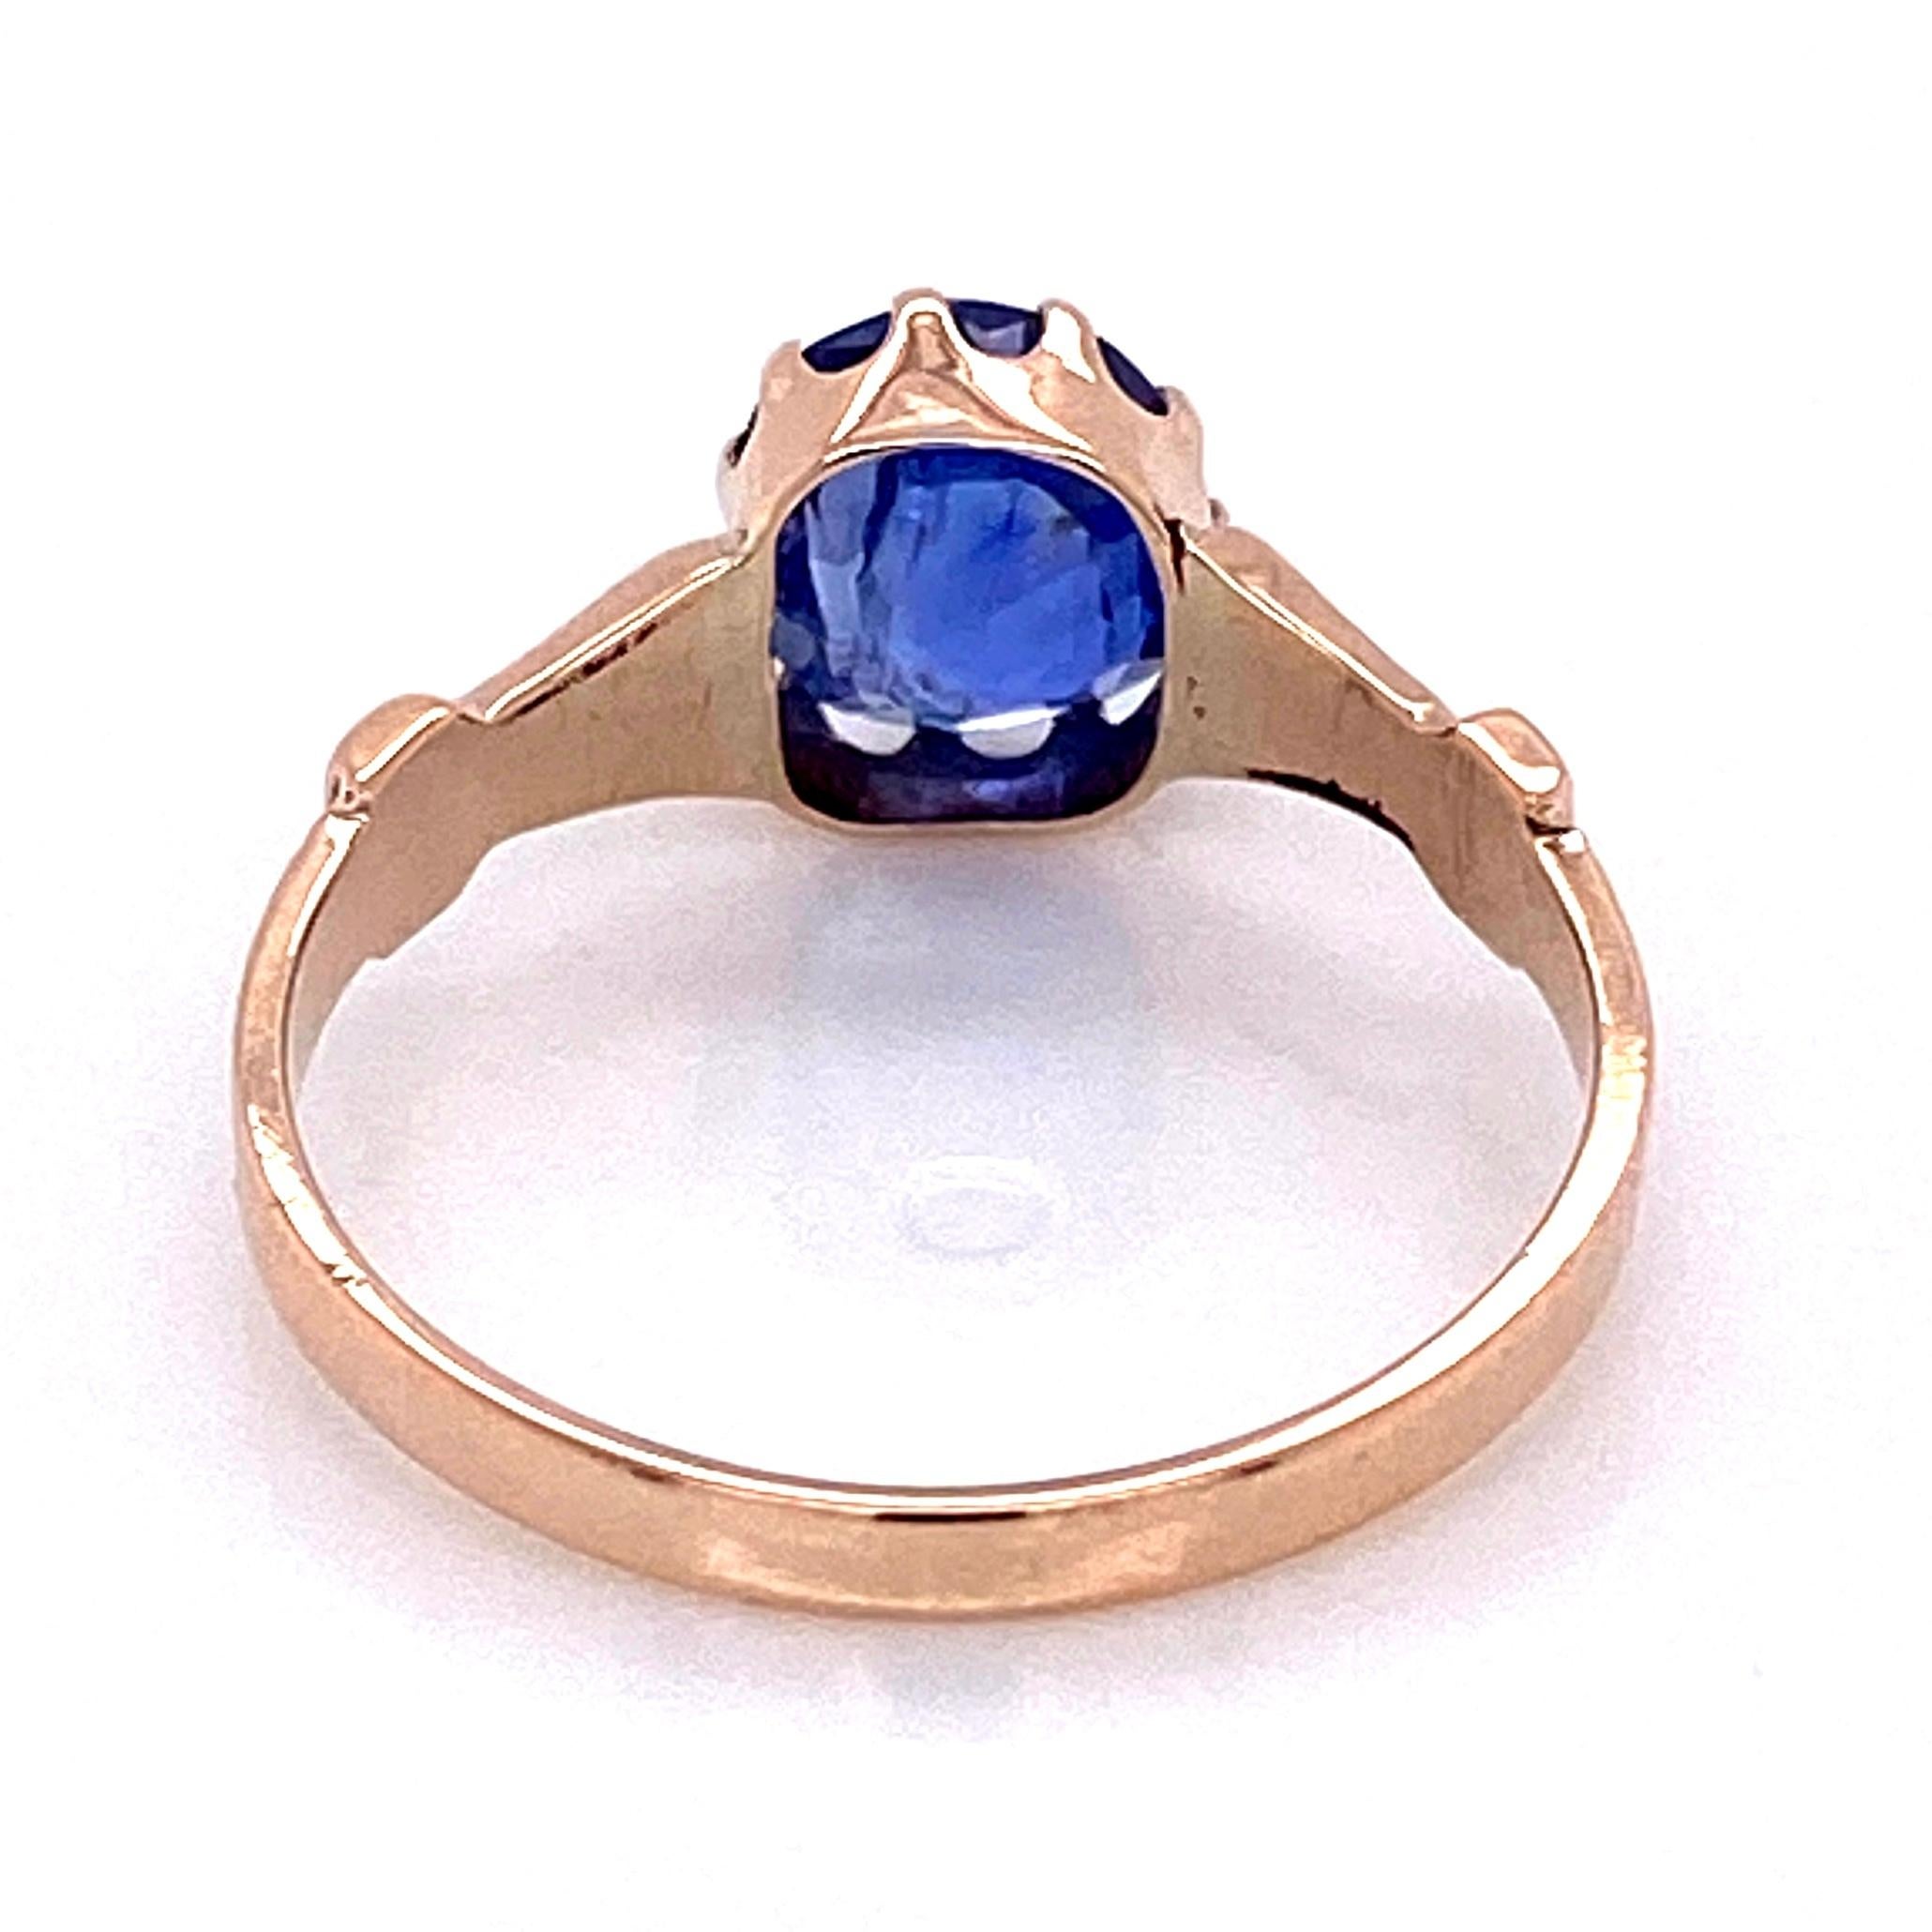 Vintage 1.51 Carat No Heat Blue Sapphire Antique Gold Ring Fine Estate Jewelry Excellent état - En vente à Montreal, QC